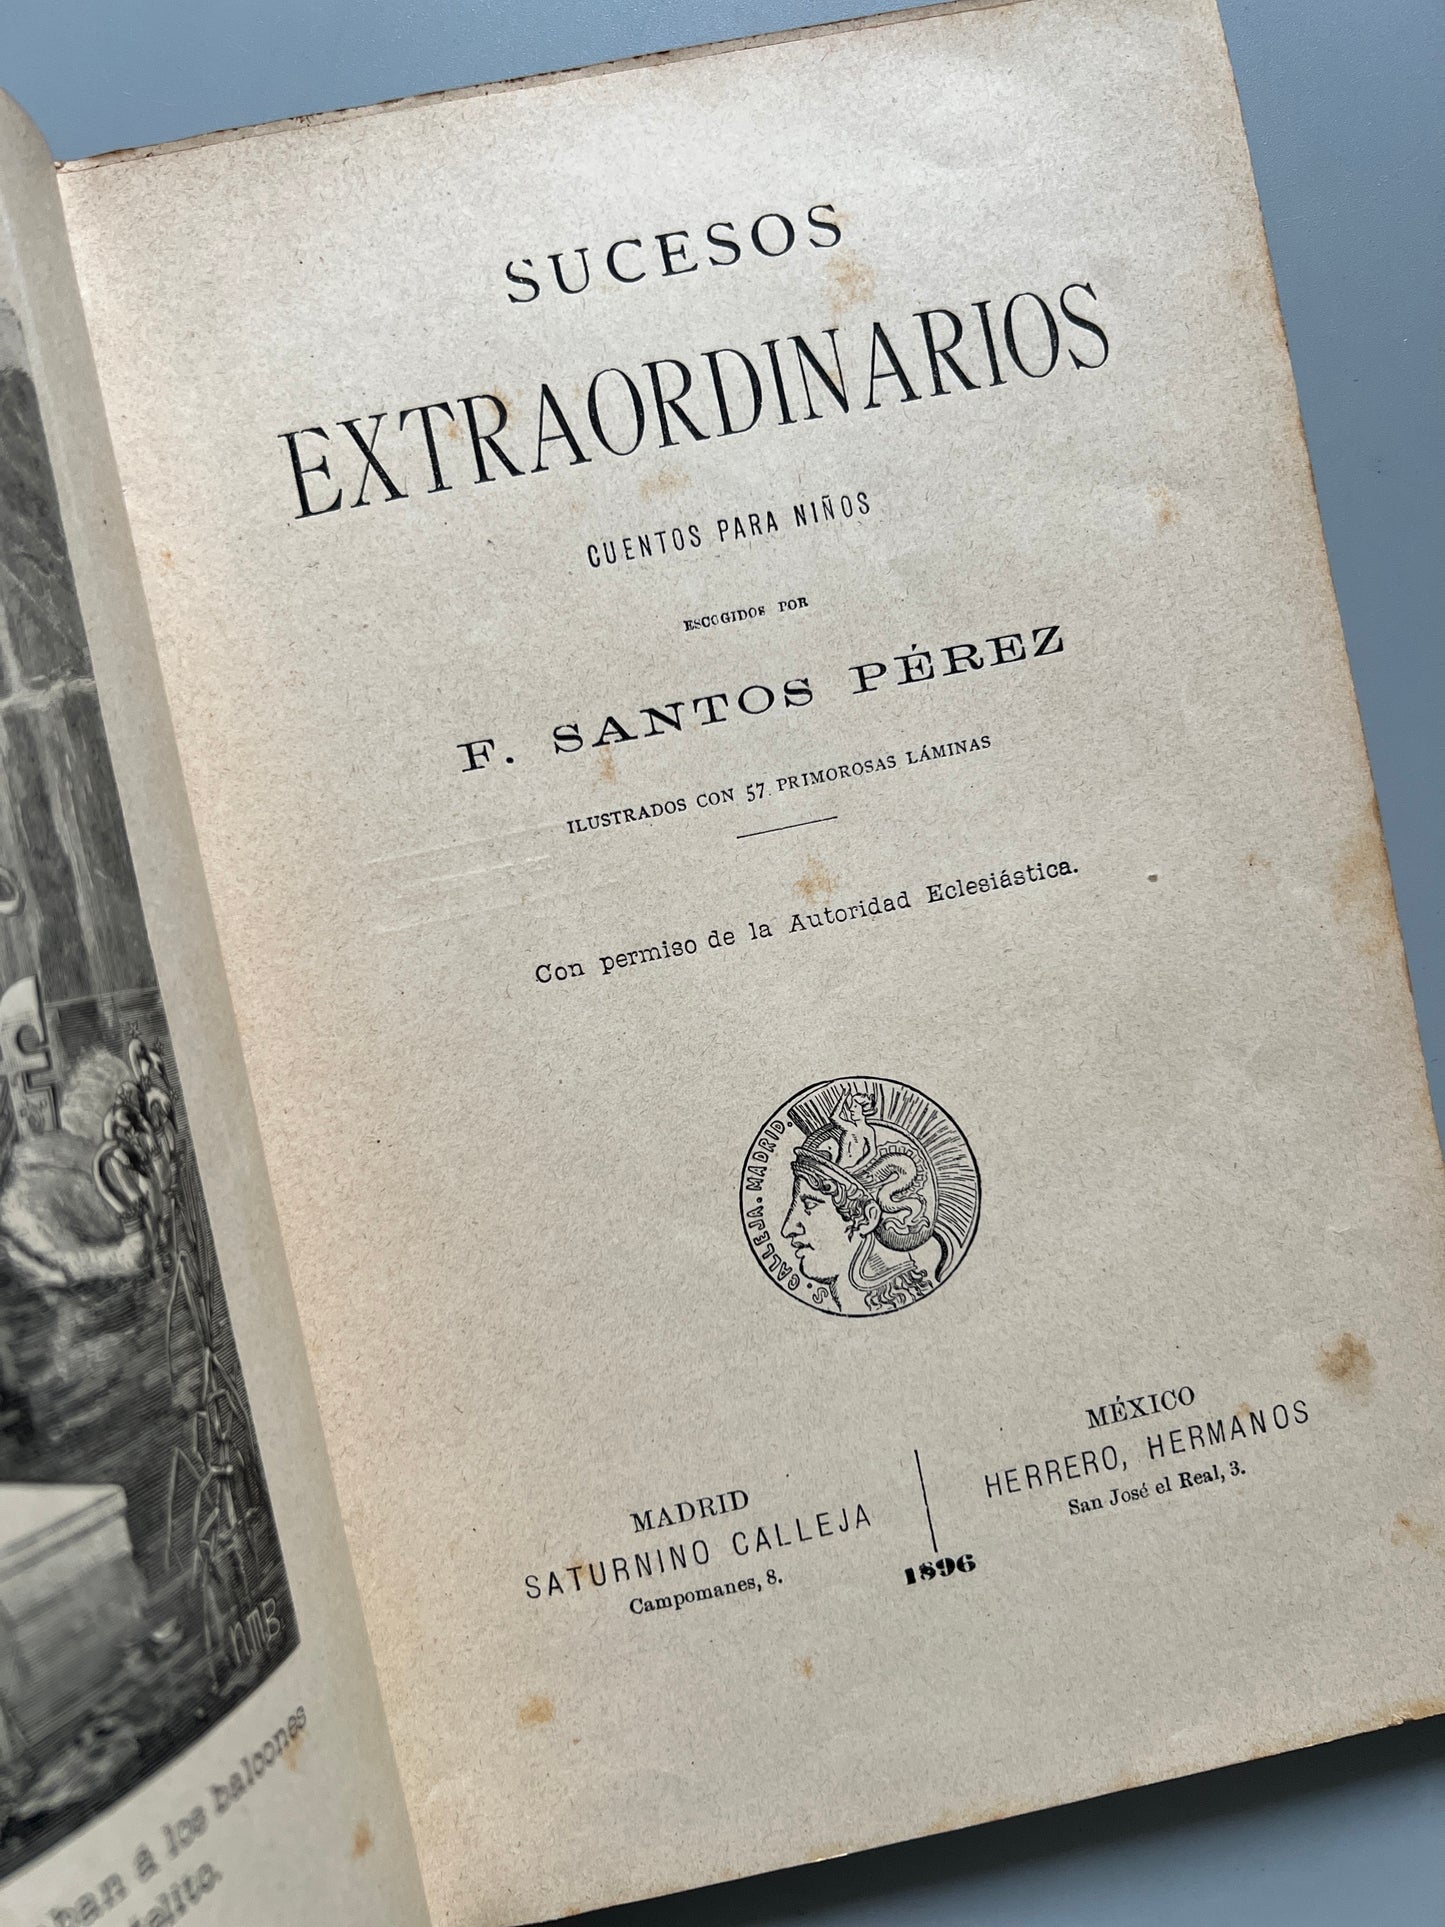 Sucesos extraordinarios. Cuentos para niños, F. Santos Pérez - Saturnino Calleja, 1896